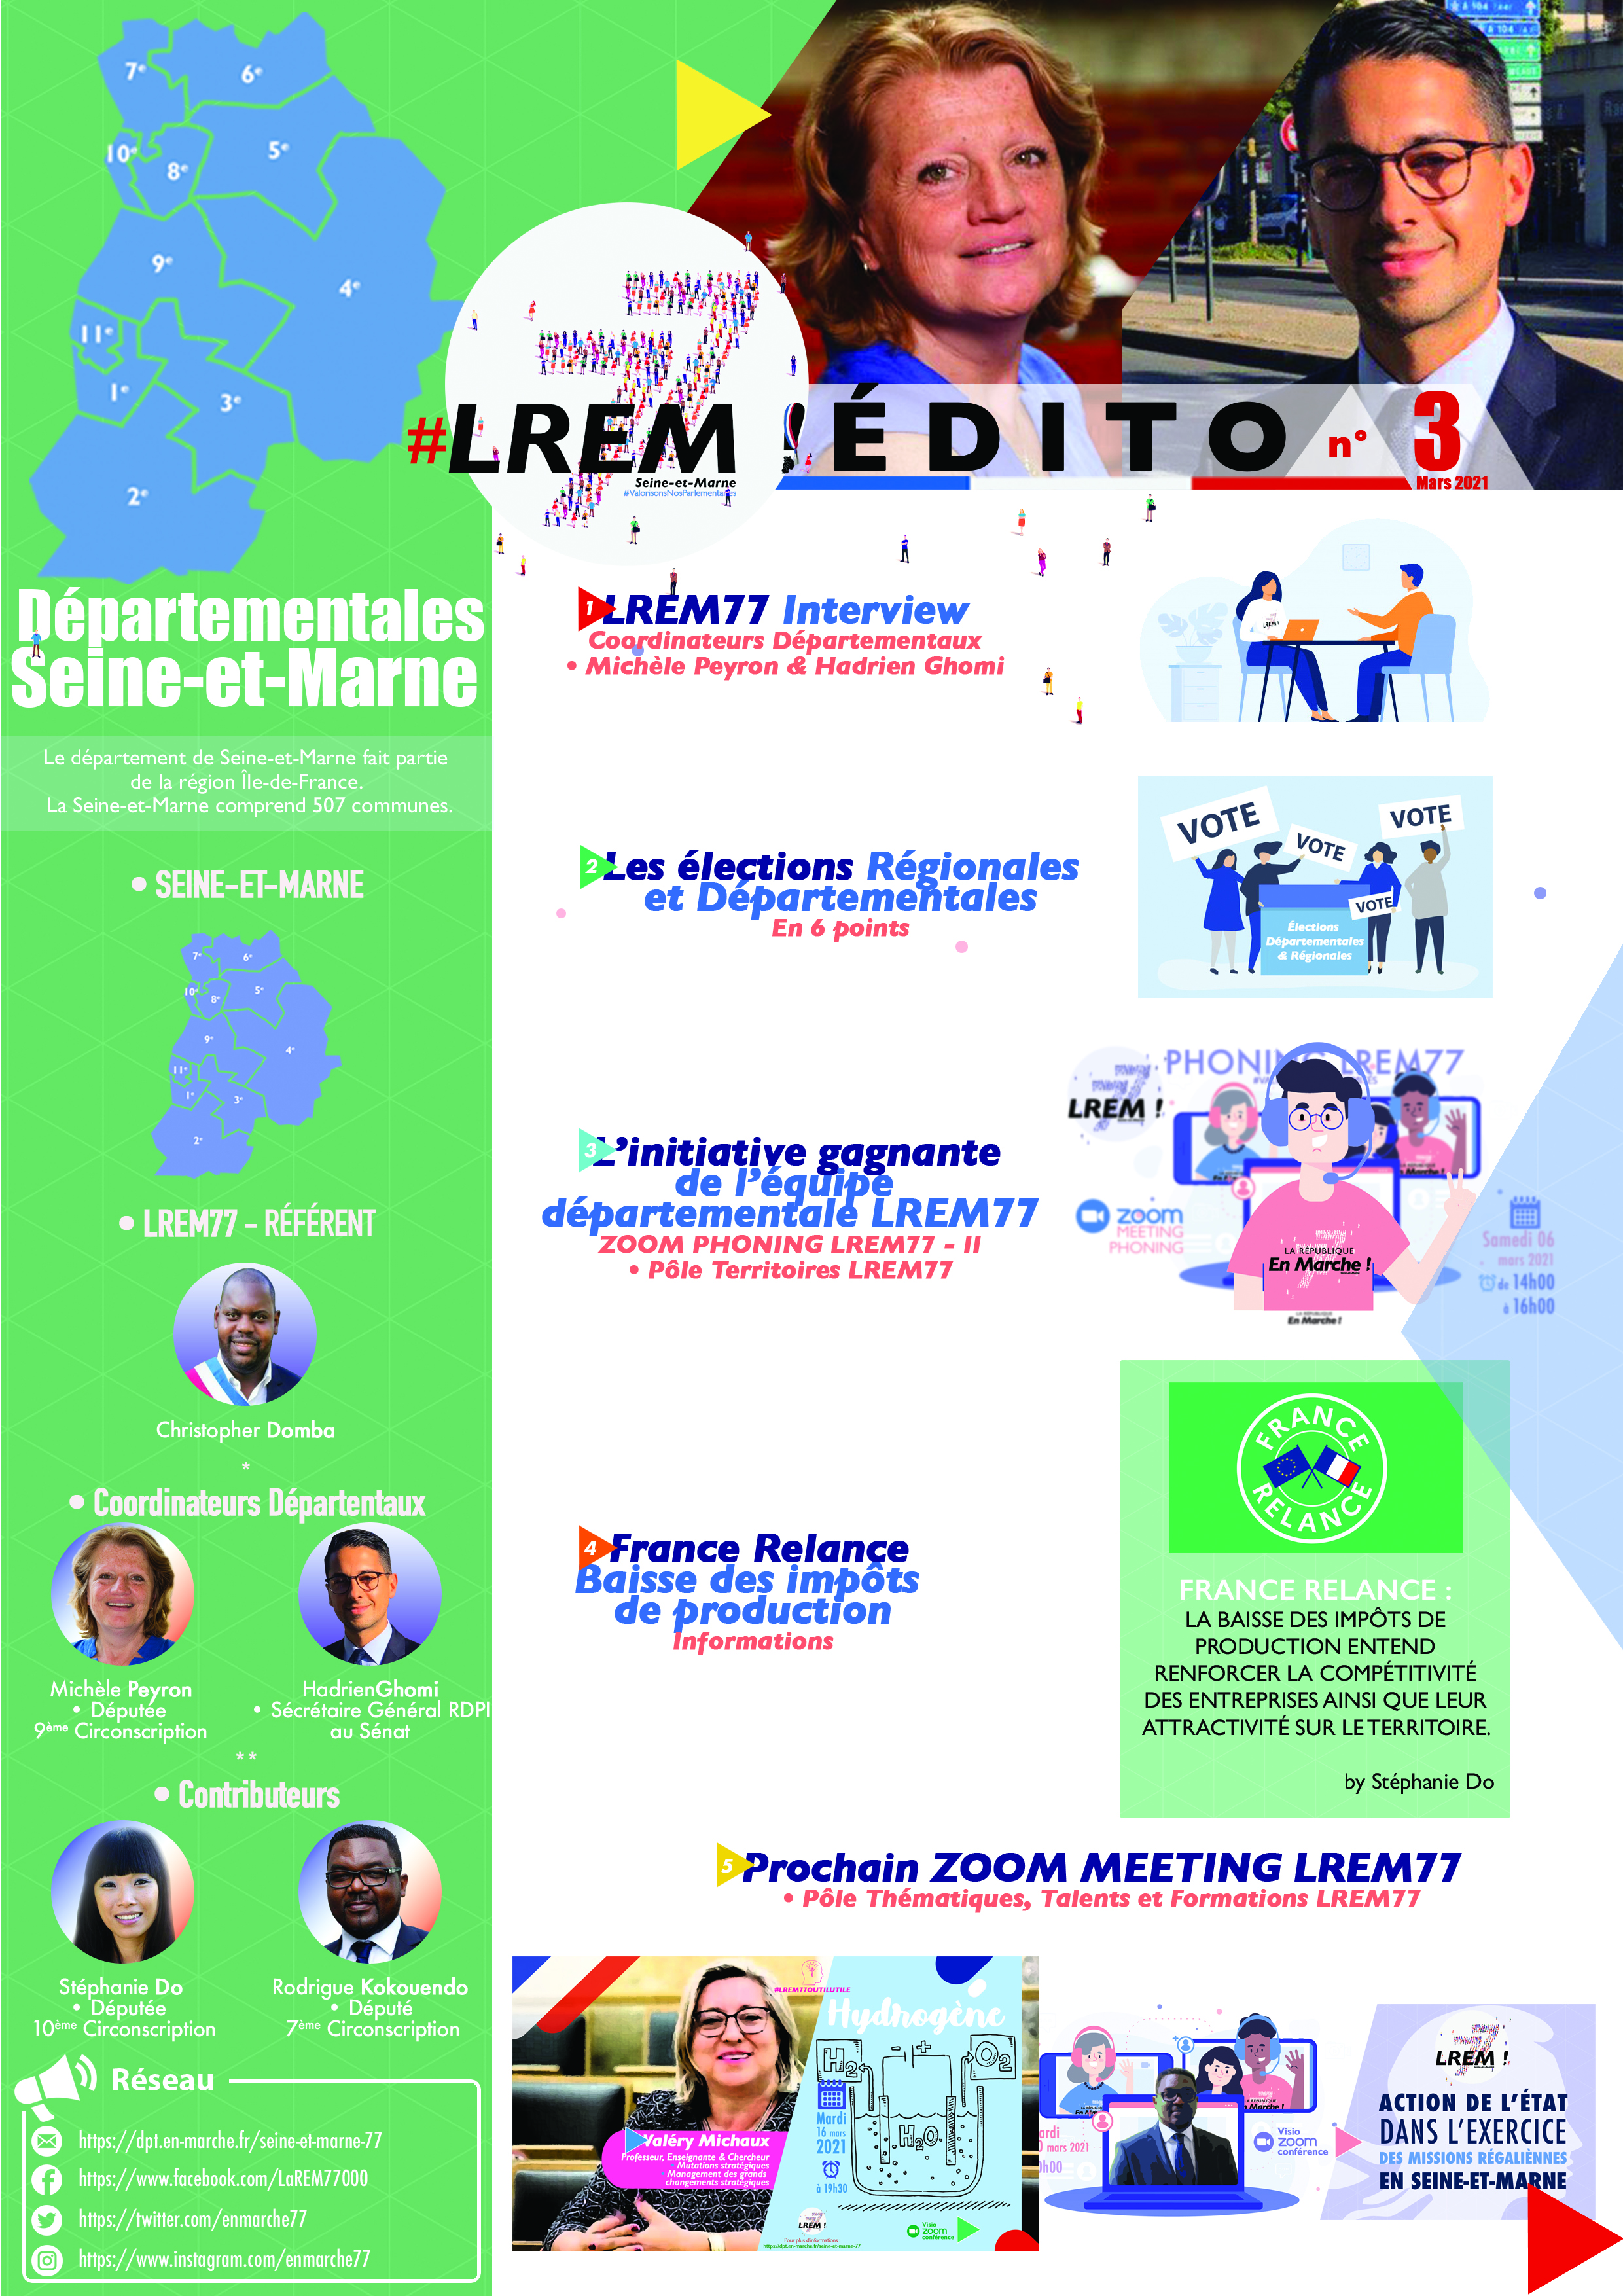 #LREM77EDITO numéro 3 - Élections Départementales et Régionales